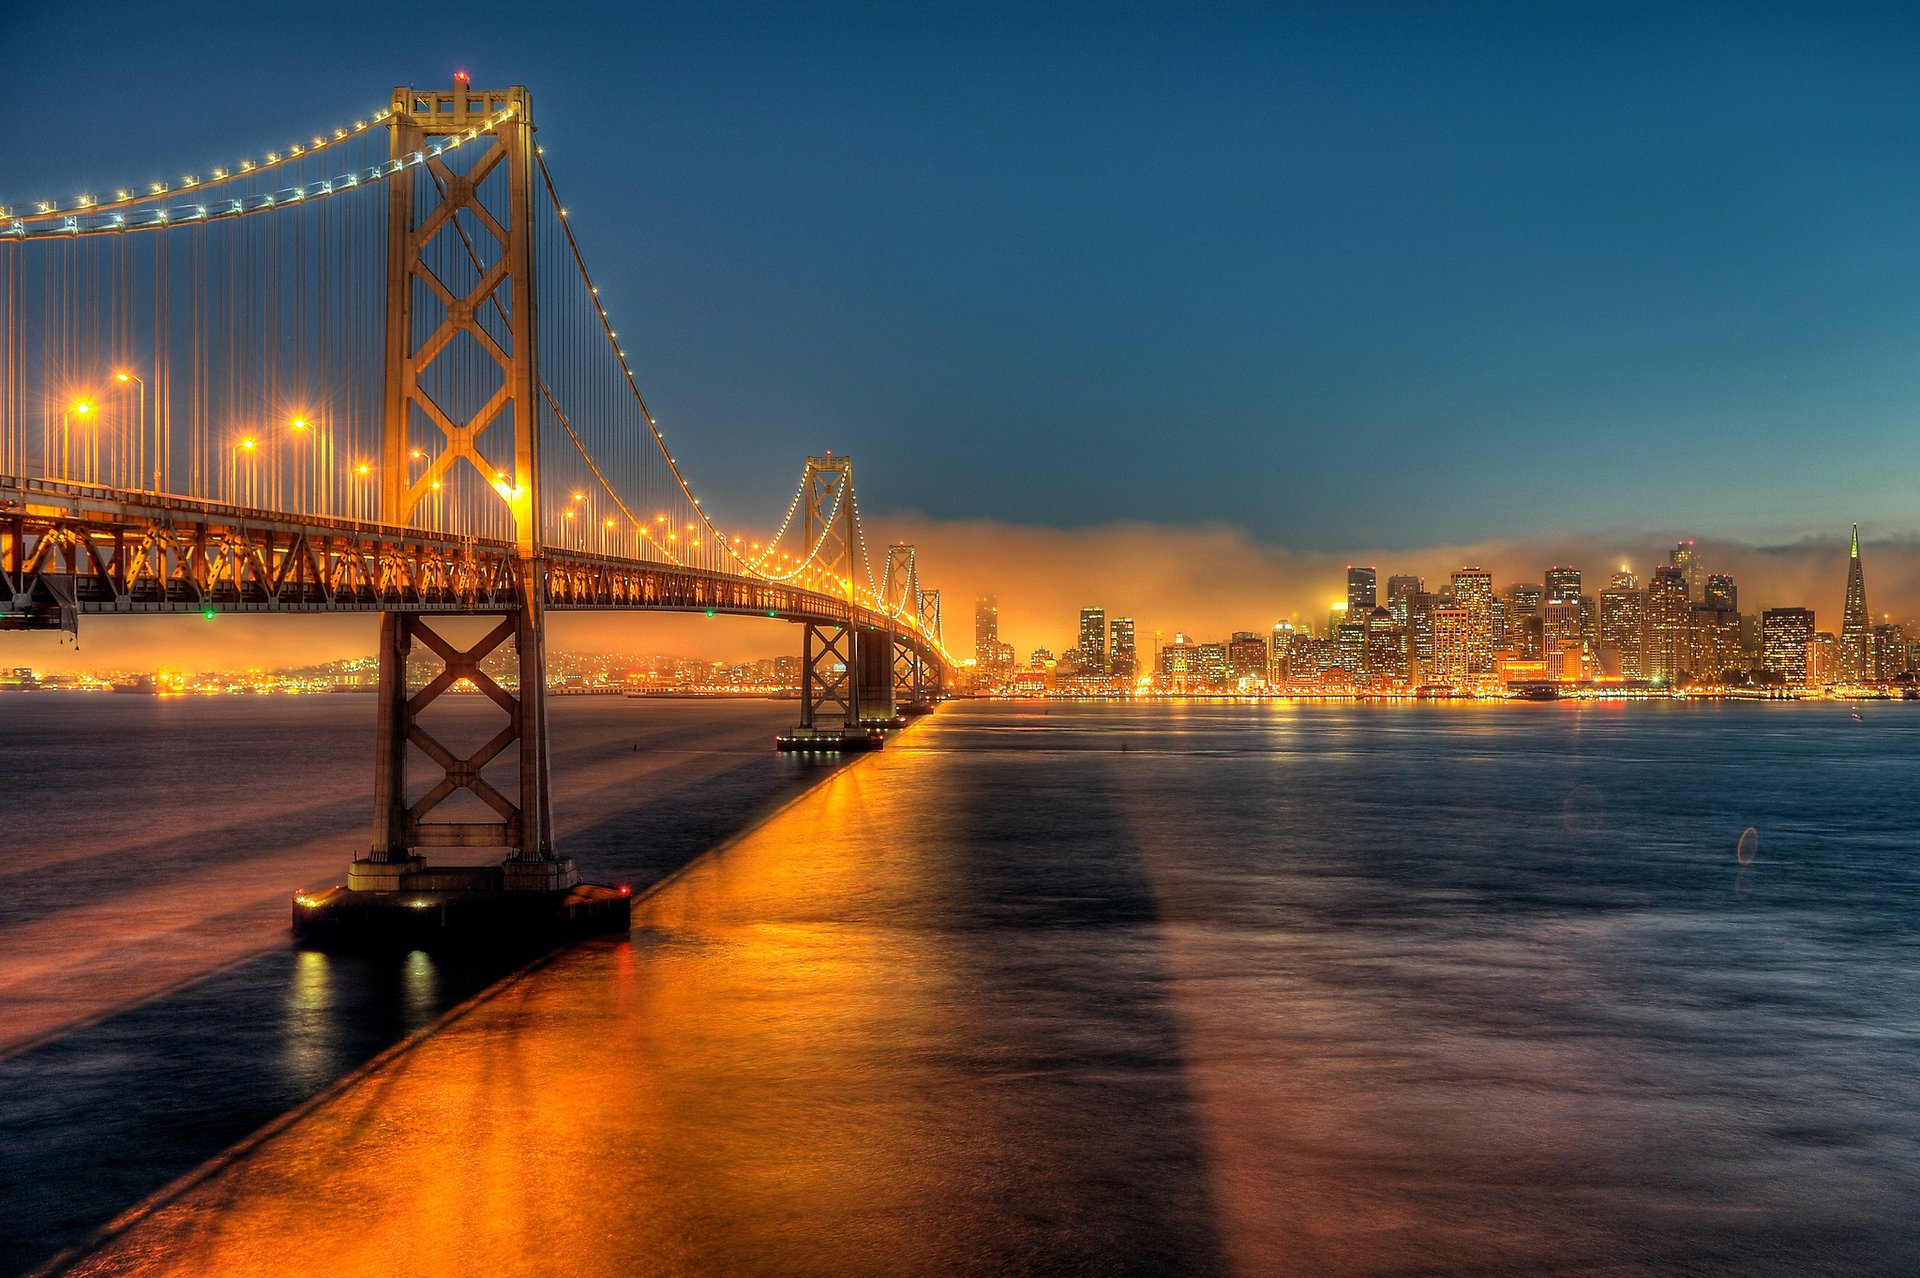 San Francisco Bridge at sunset. evening